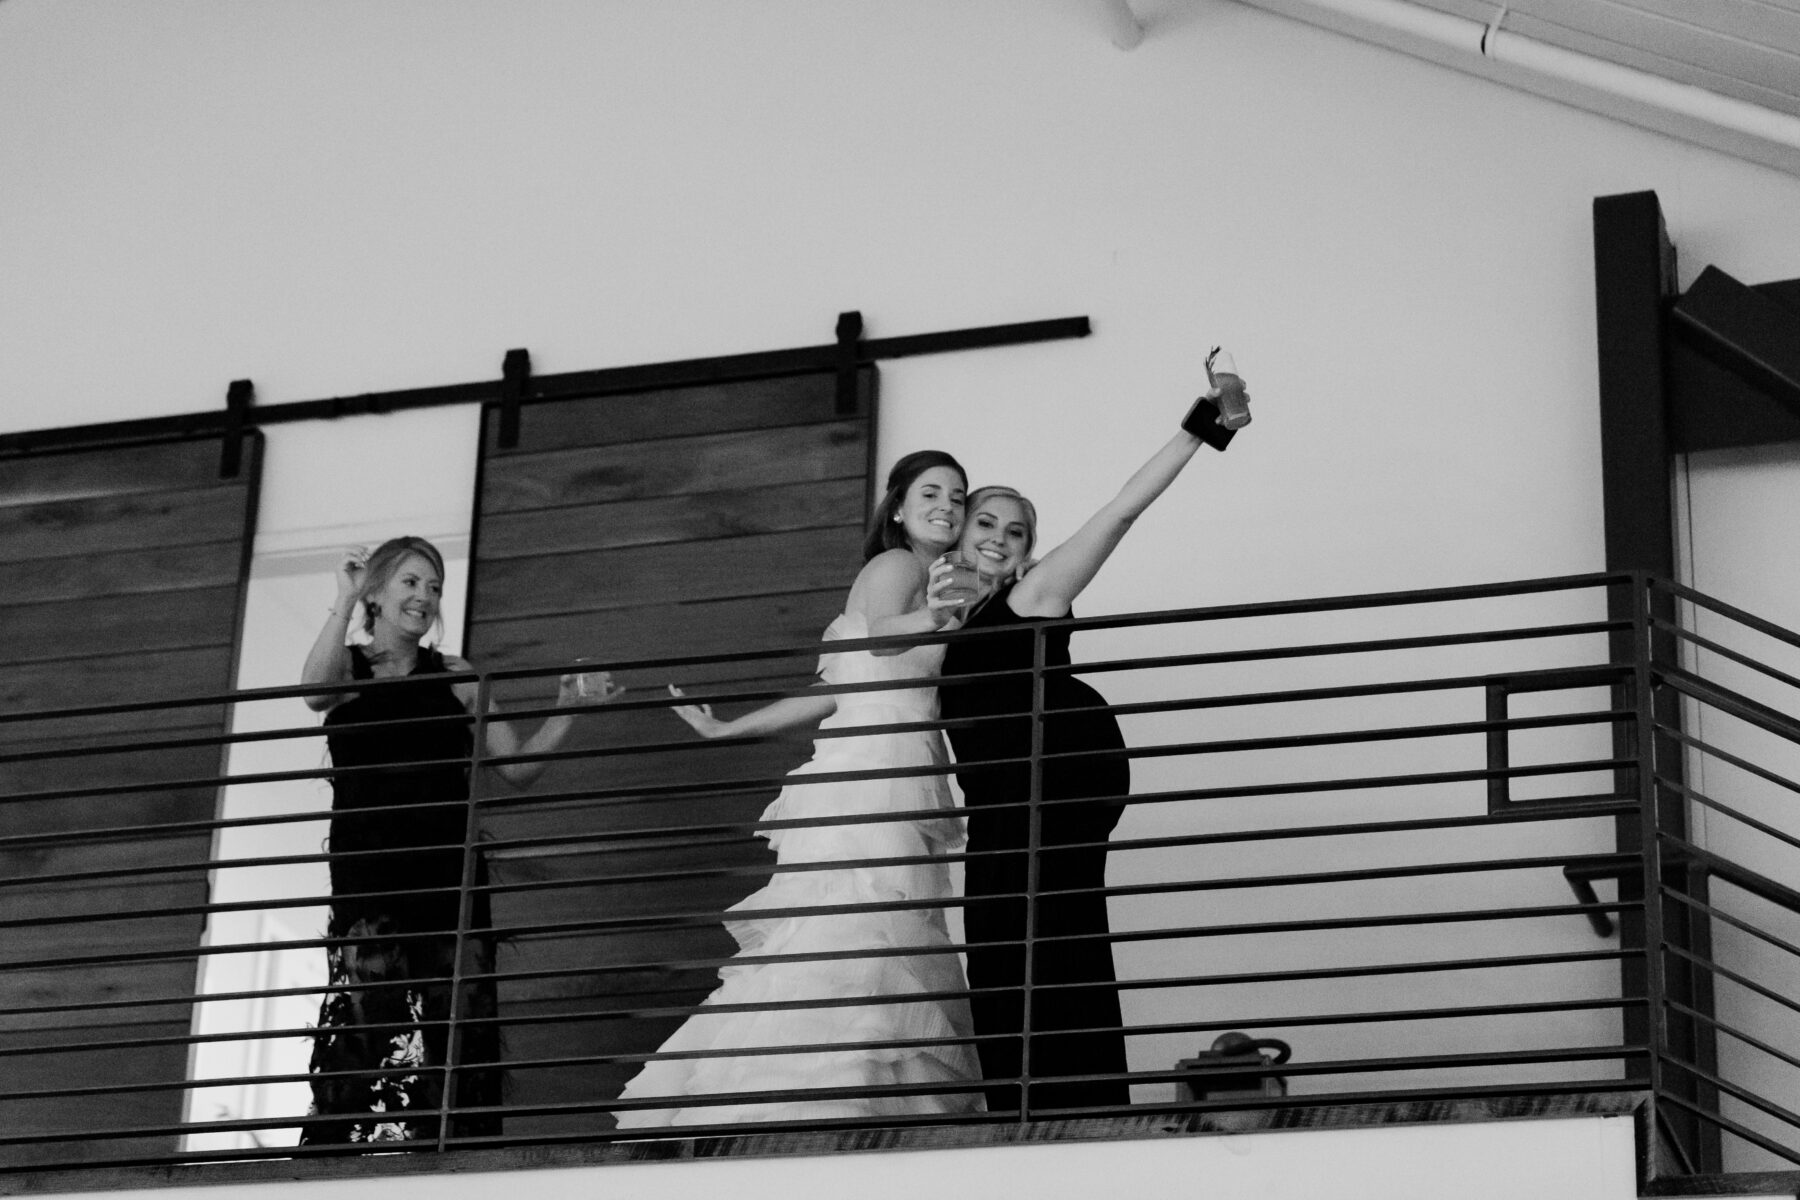 Ashley Bridges Wedding Photography | Nashville Bride Guide